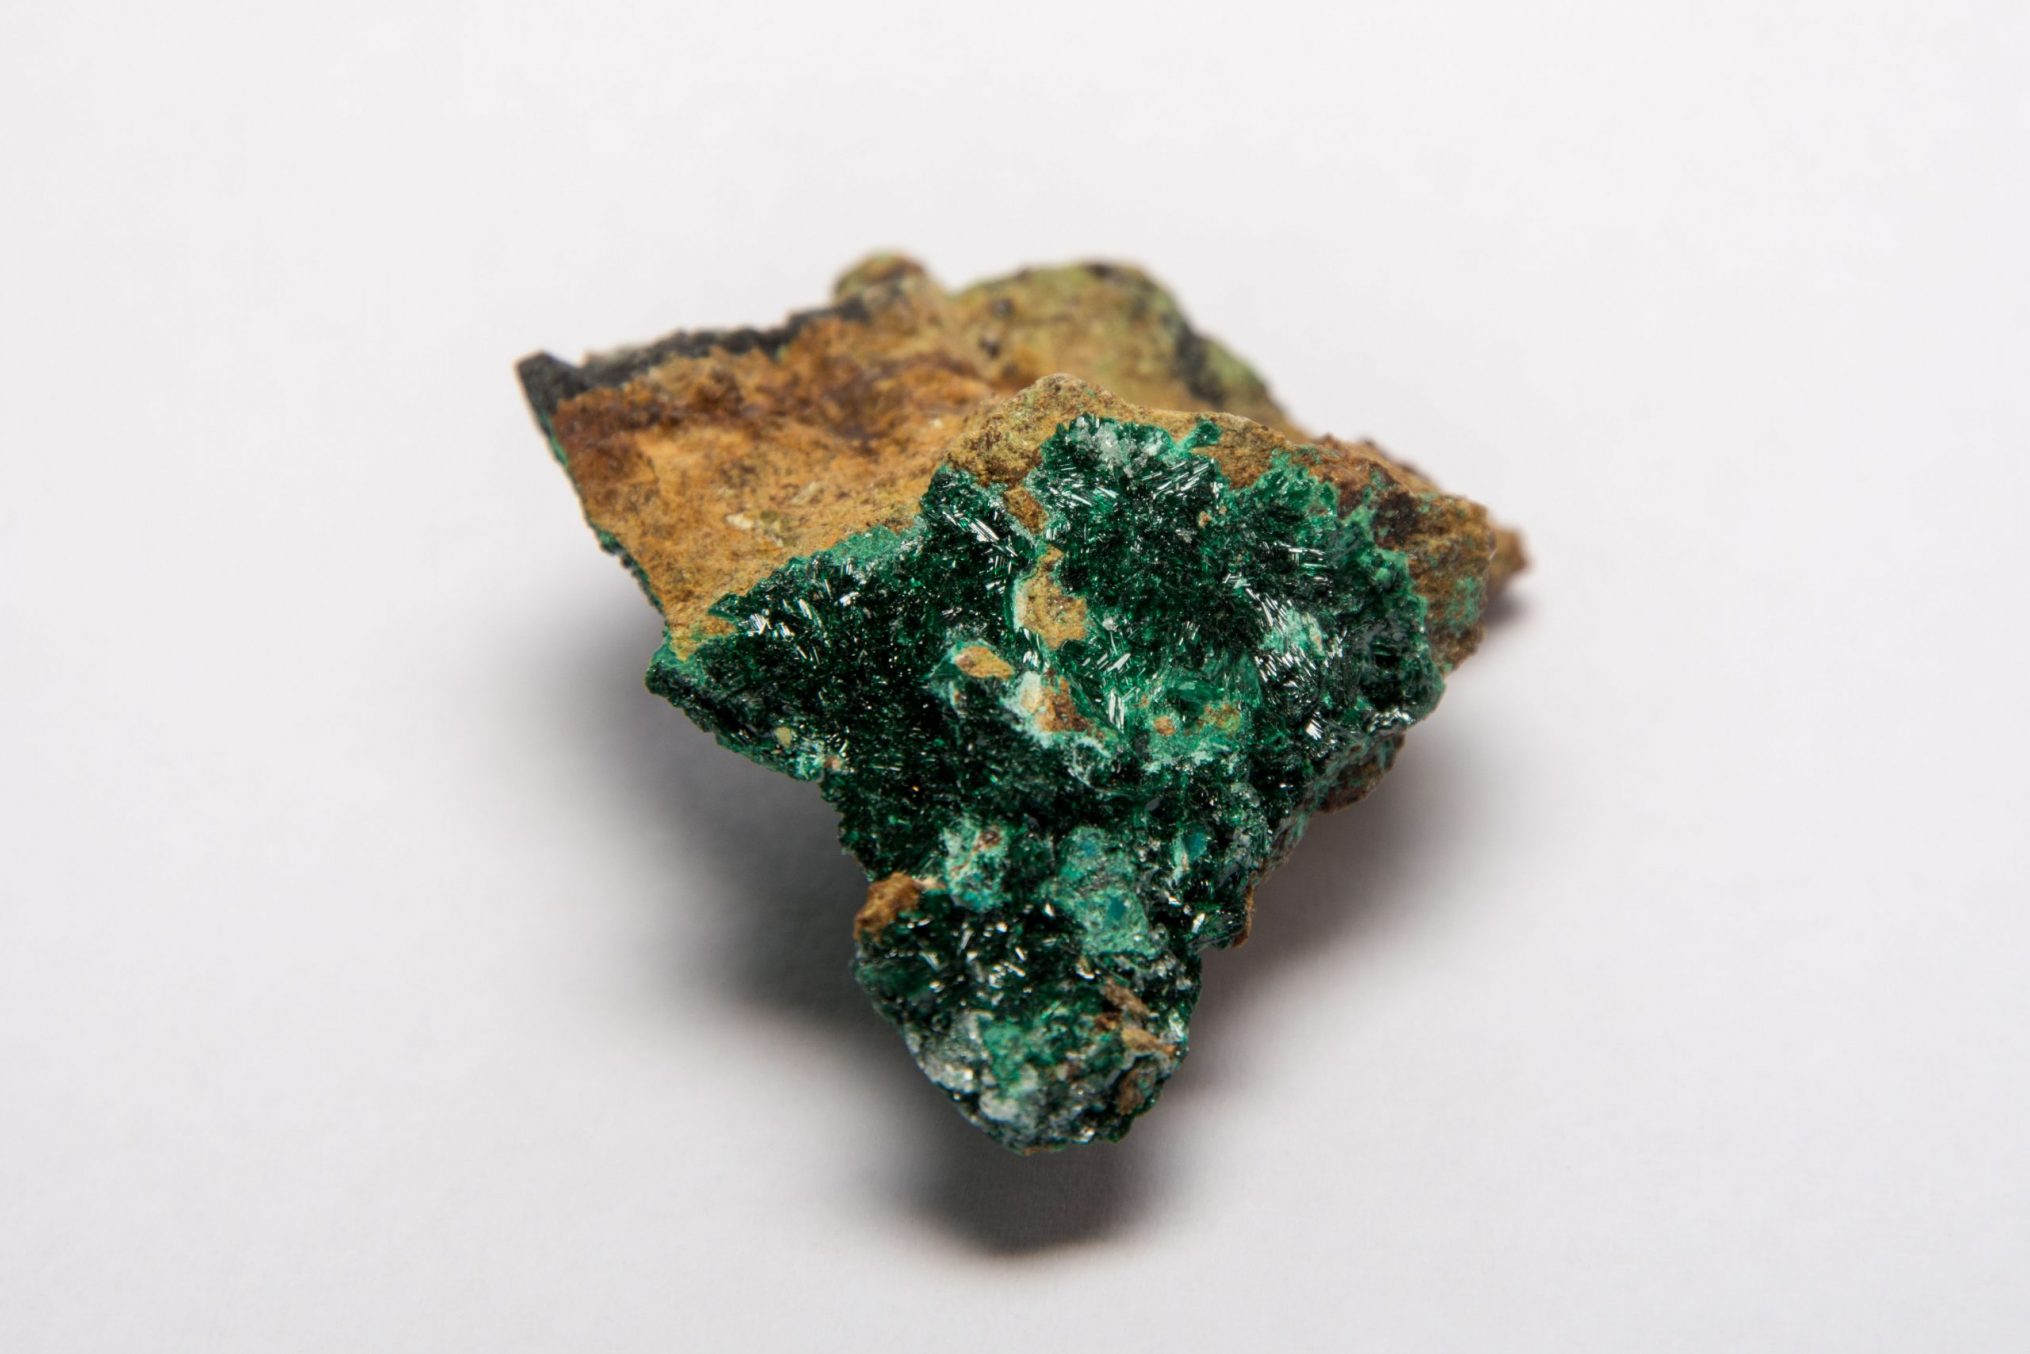 Ein kleiner Stein mit einer dünnen Schicht grüner Atacamit-Kristalle auf der Oberfläche